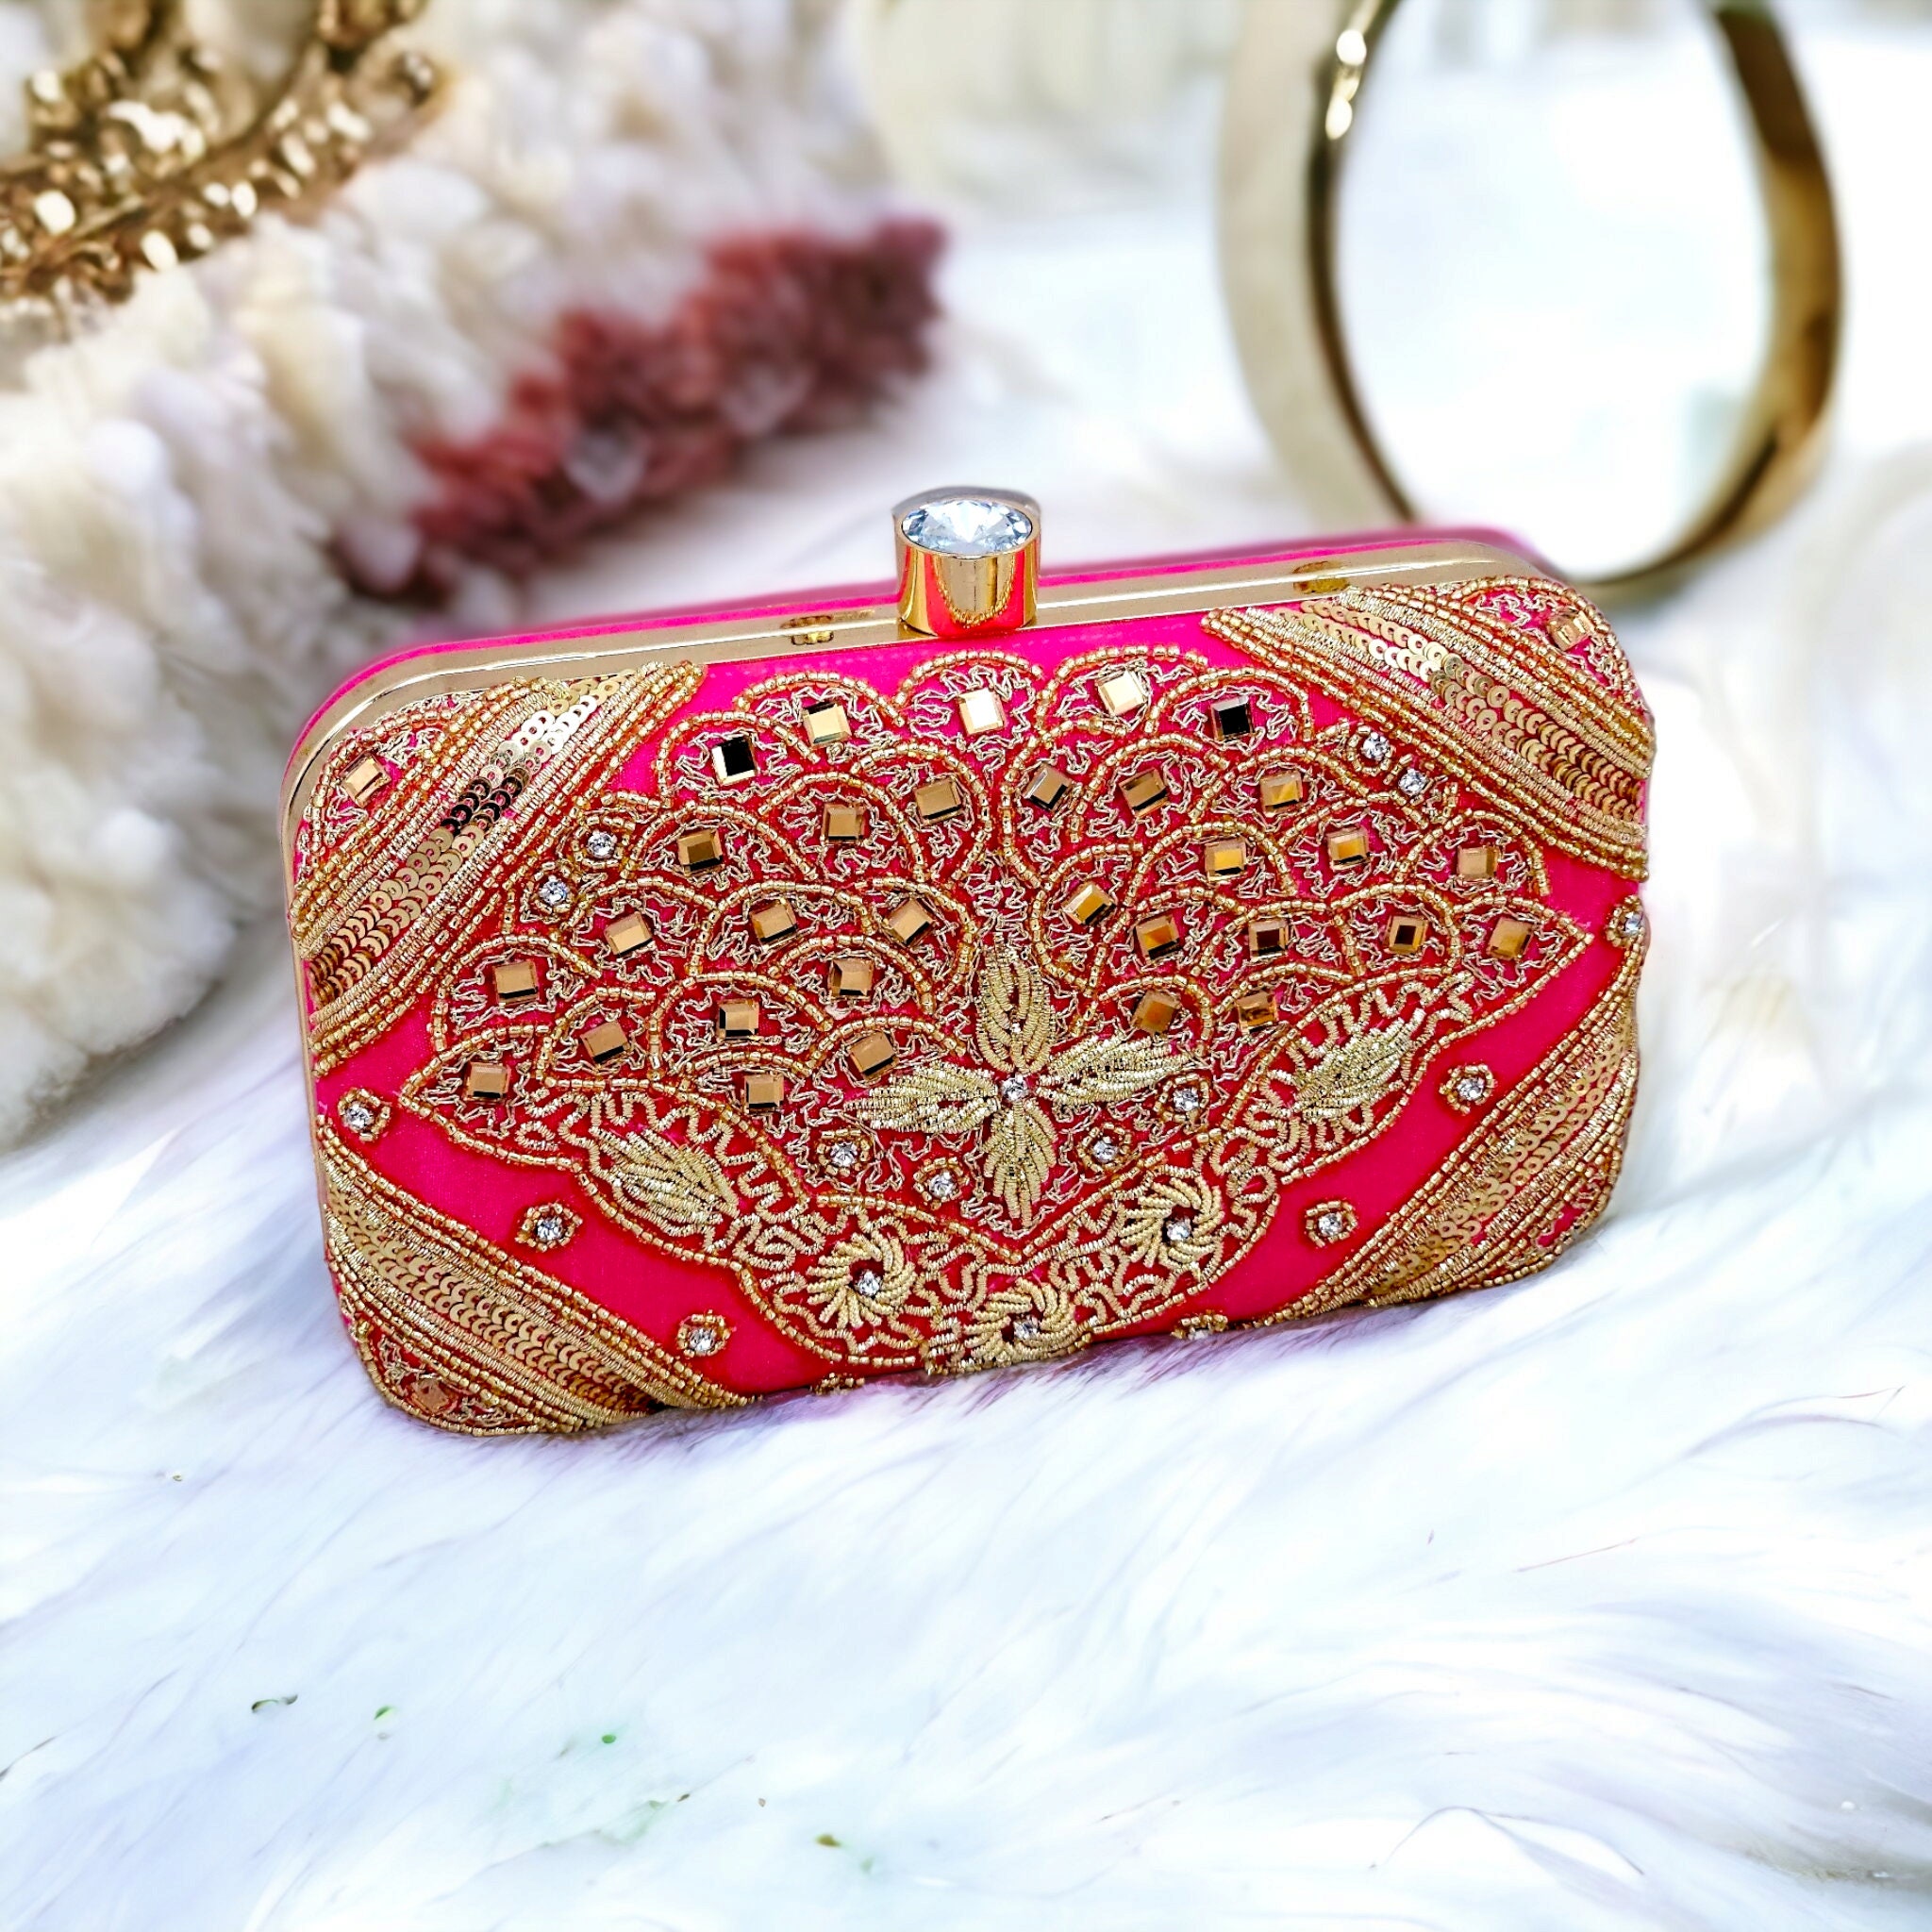 Red Taffeta Wedding Kiss Lock Clutch With Bow Elegant Bridal - Etsy |  Wedding clutch, Bridal handbags, Evening handbag